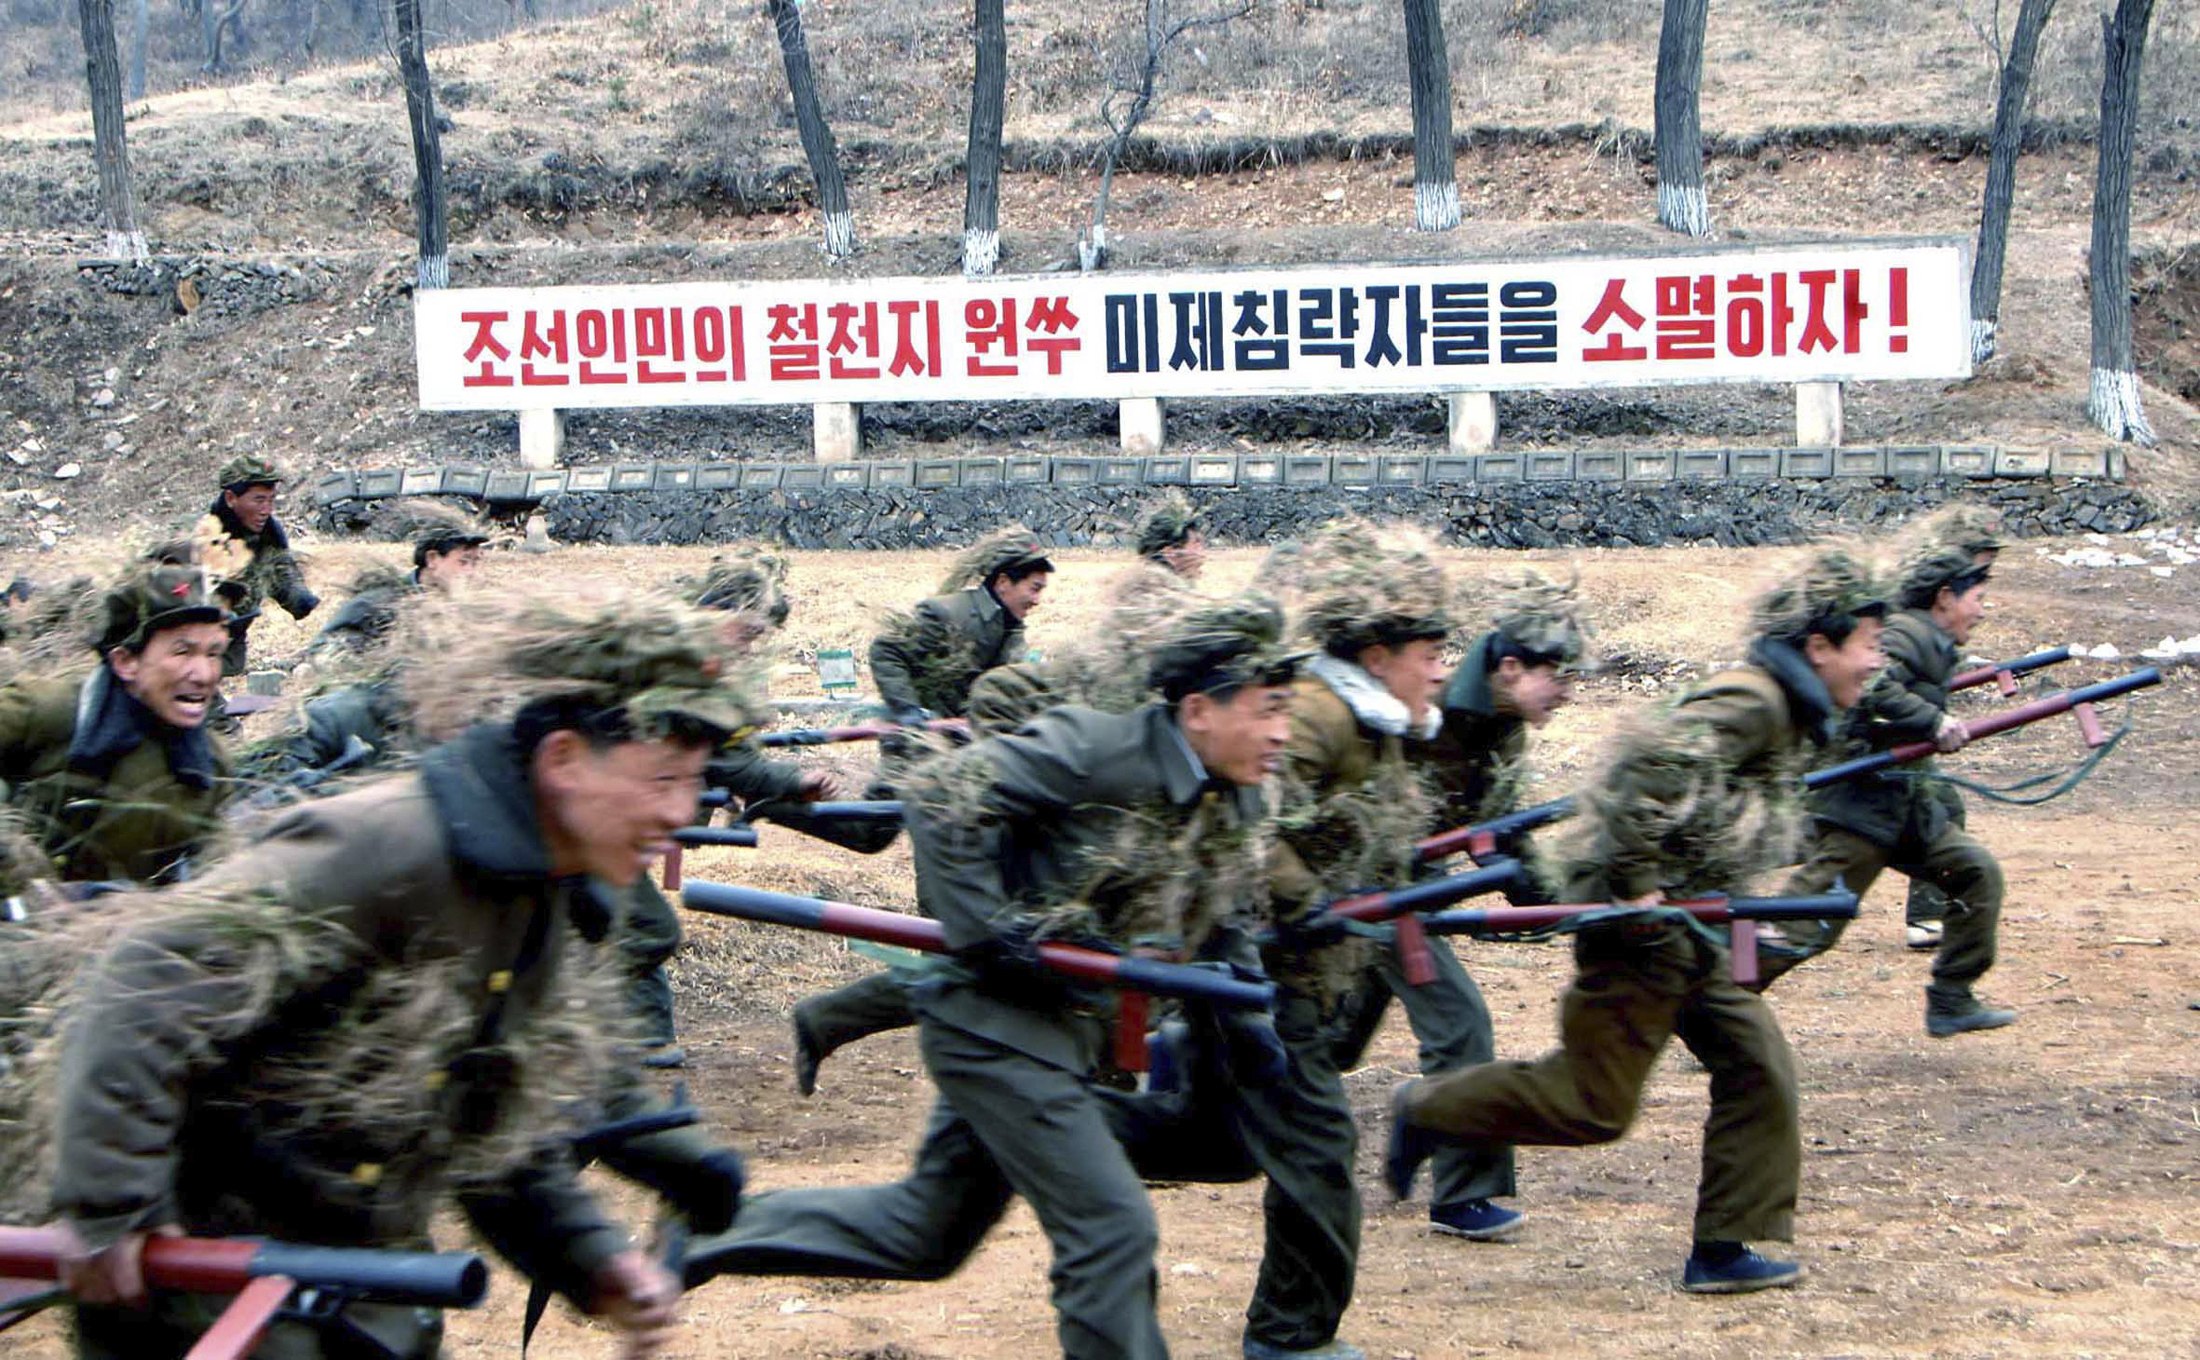 朝鲜百万学生自愿报名参军 韩国调查敏感时期